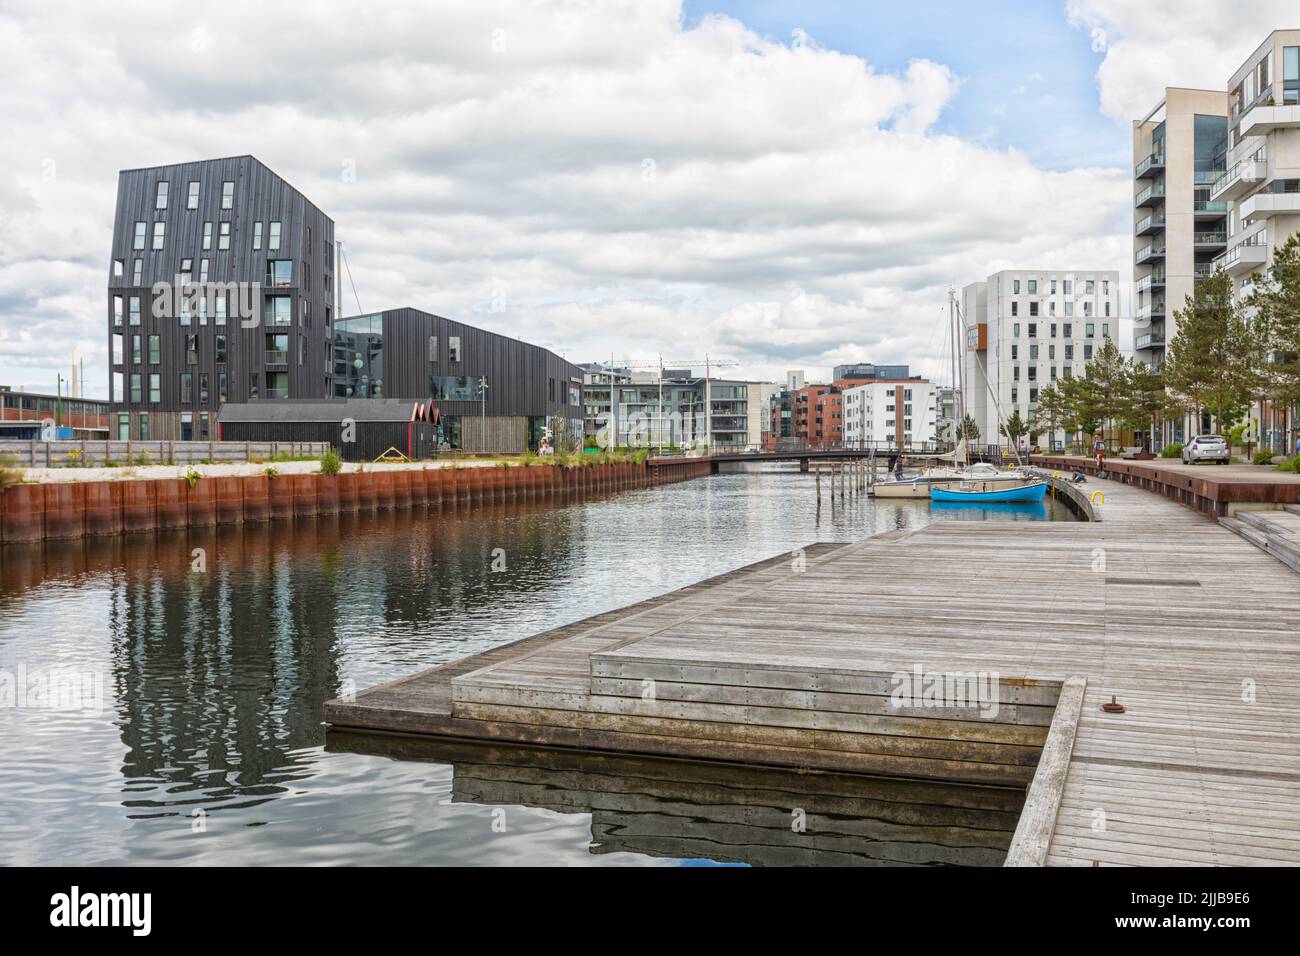 Zona residencial y marina en el puerto de Odense, Dinamarca Foto de stock